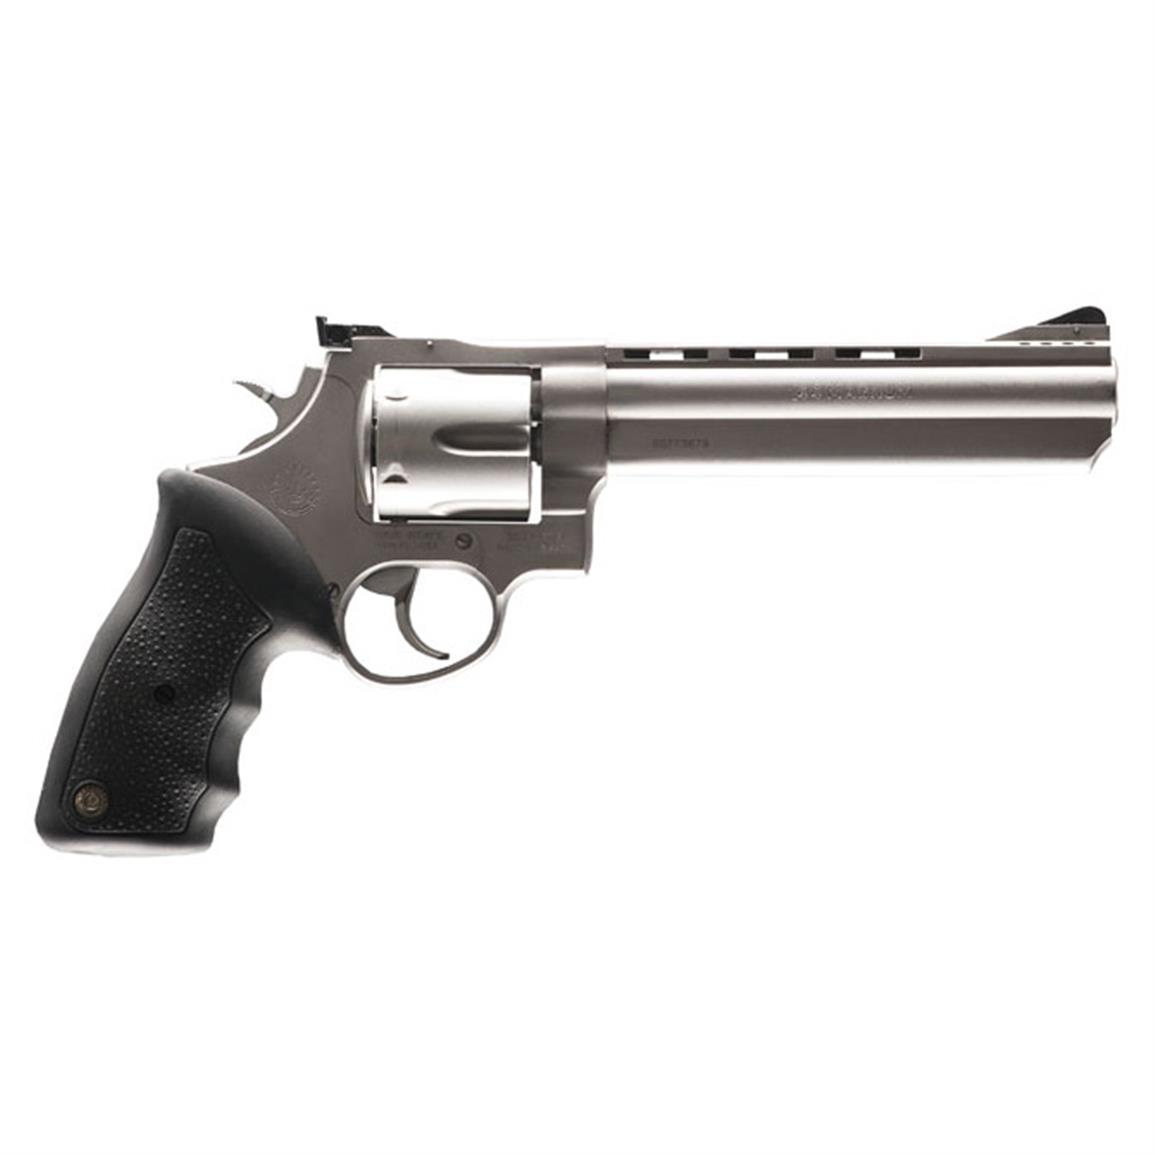 taurus-model-44-da-sa-revolver-44-magnum-6-5-barrel-6-rounds